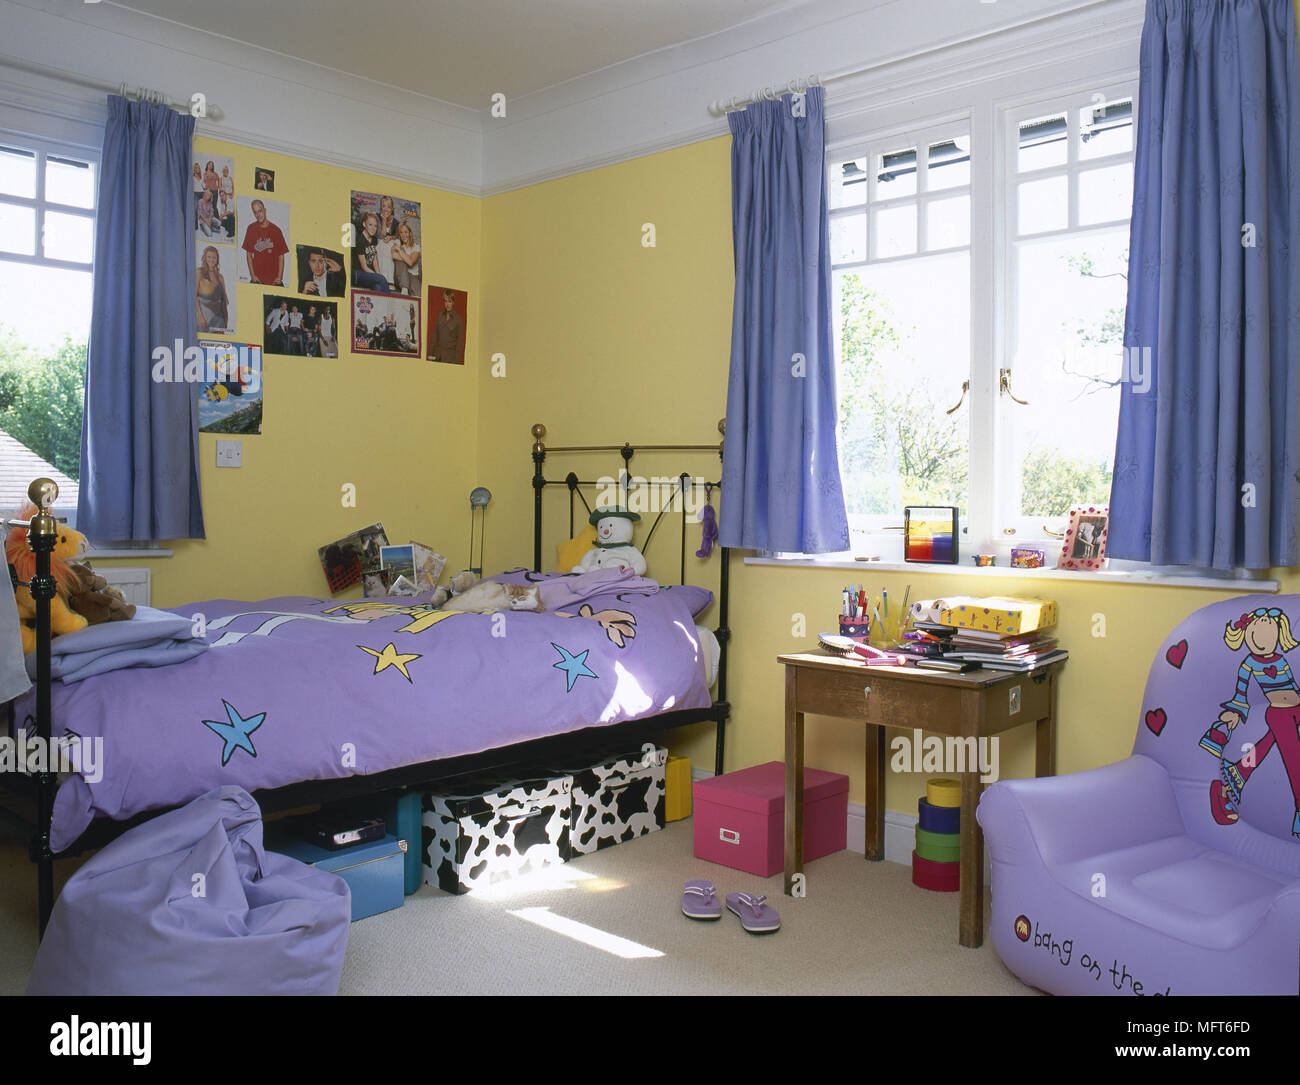 L'enfant, chambre à coucher avec lit en laiton jaune, rideaux bleus, table en bois, chaise gonflable, pourpre de la literie. Banque D'Images